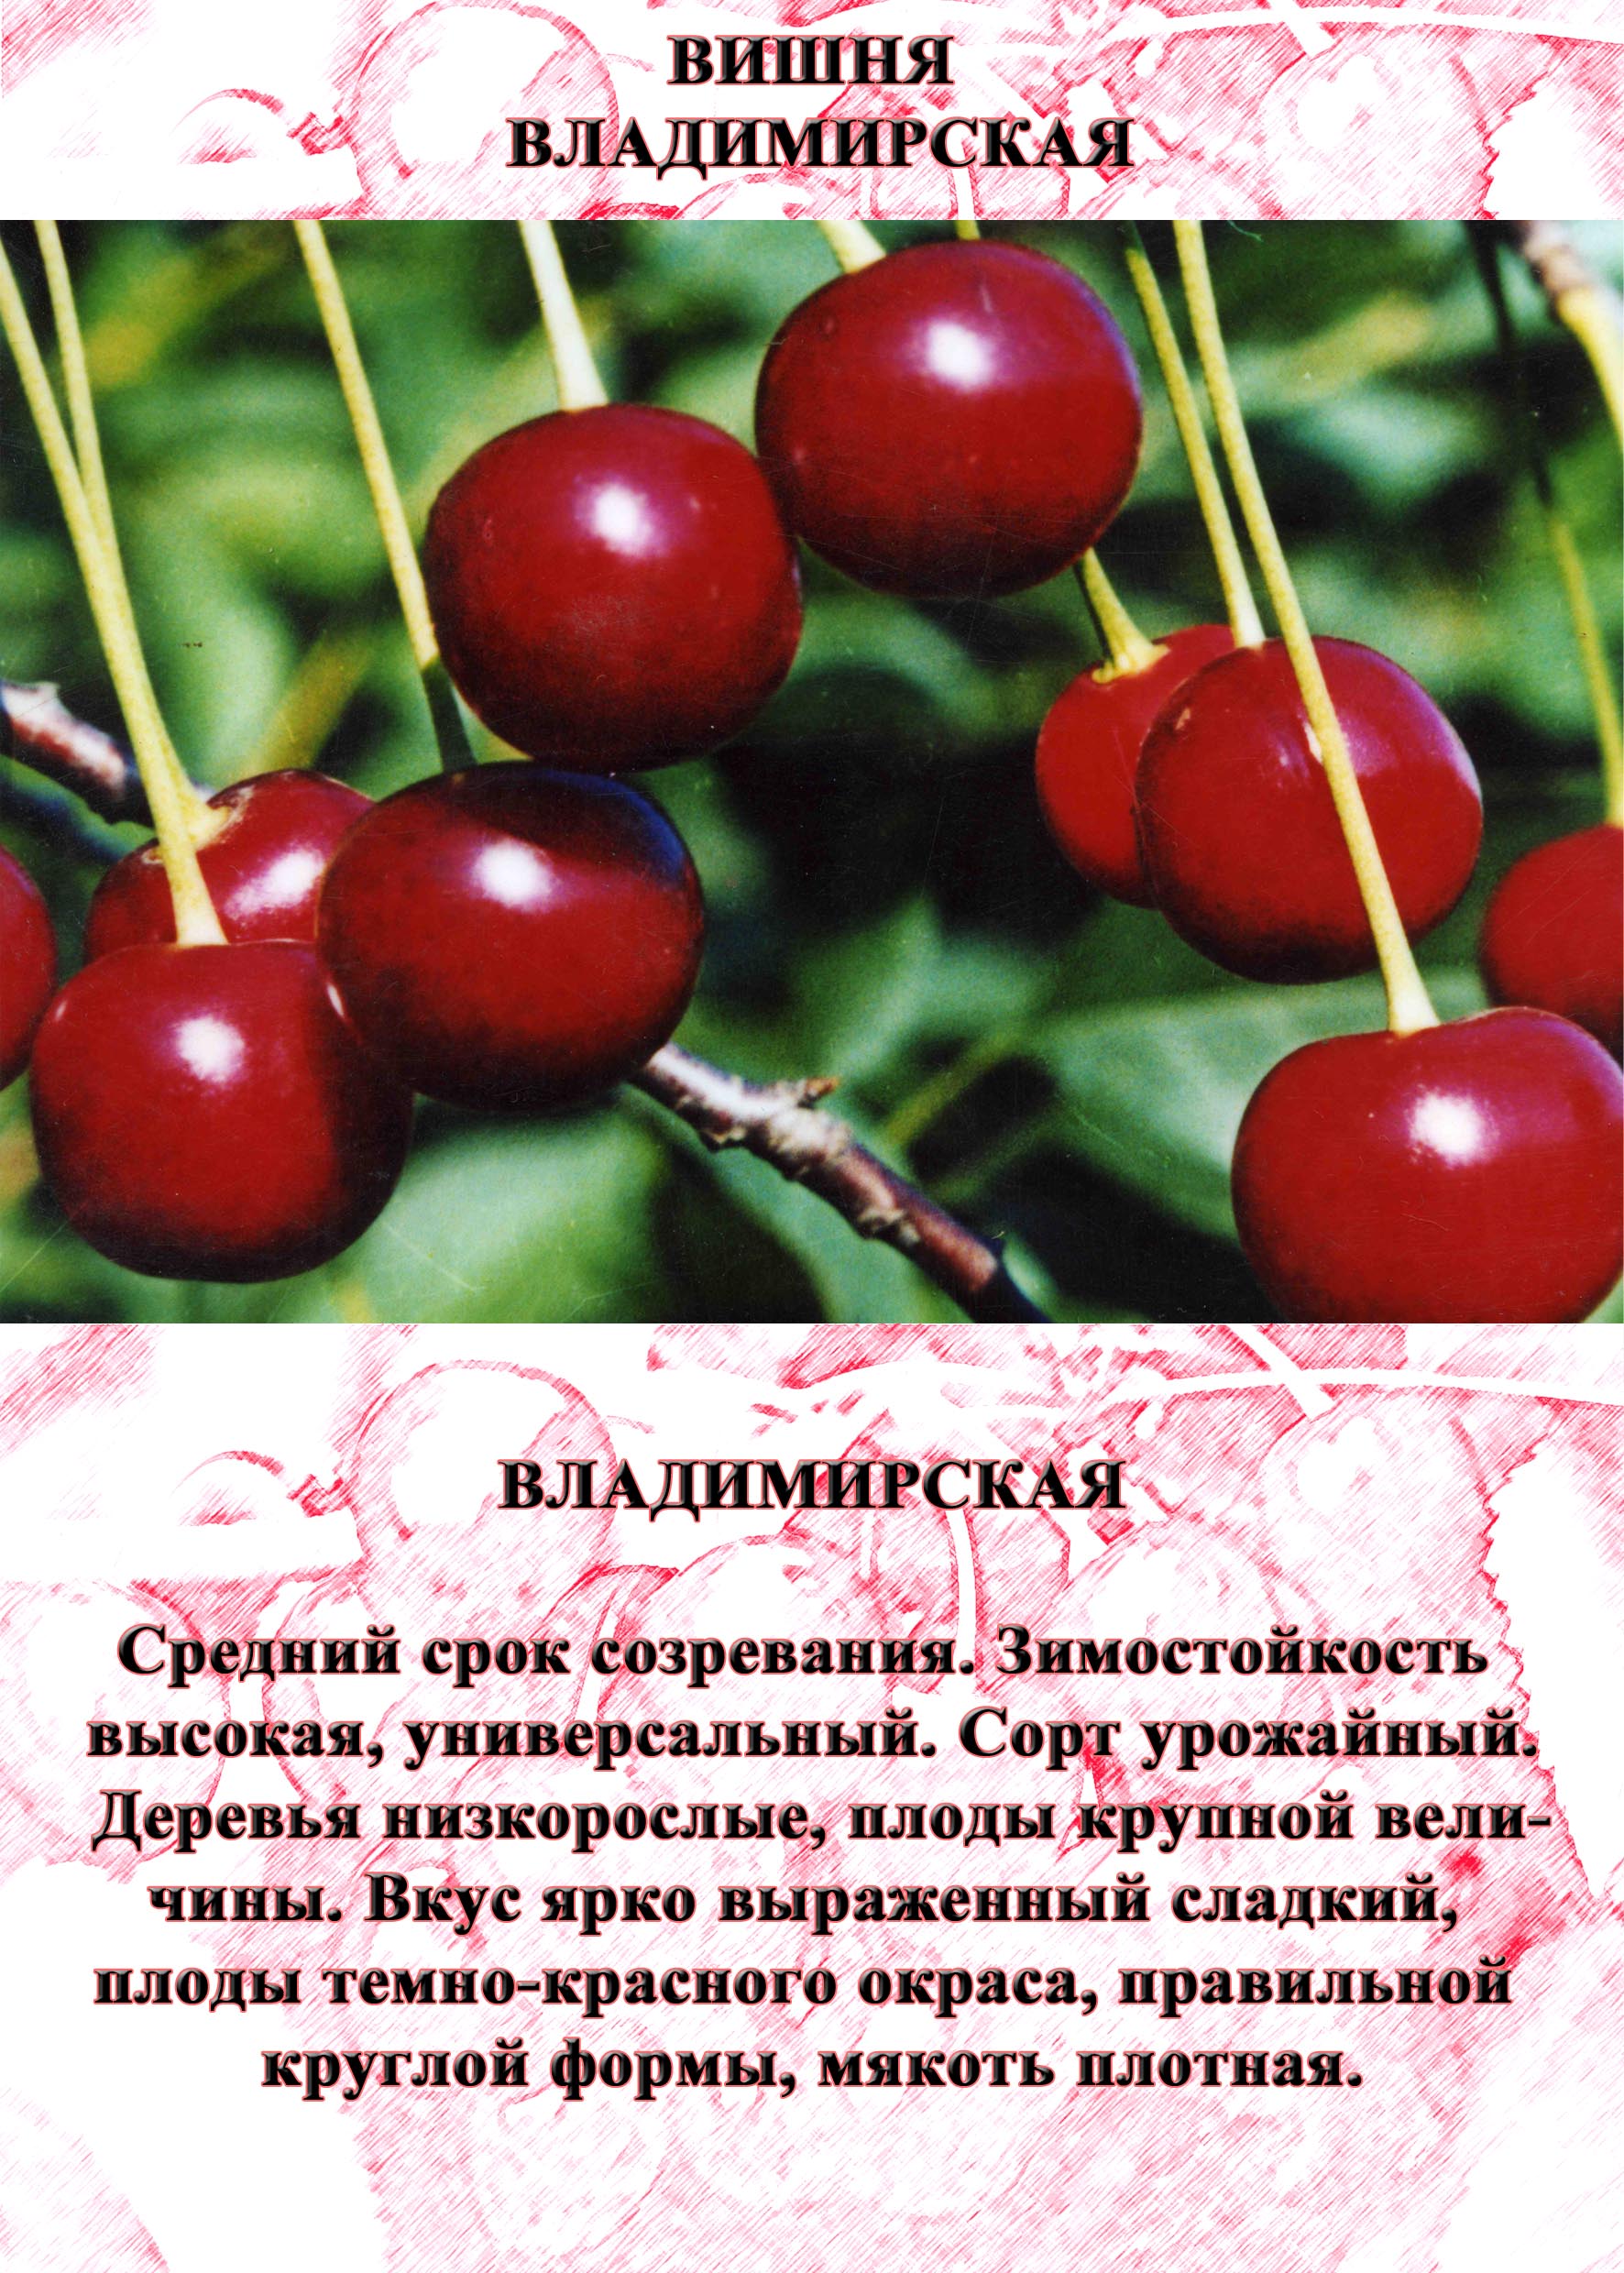 Сорта вишни для ленинградской области с фото и описанием